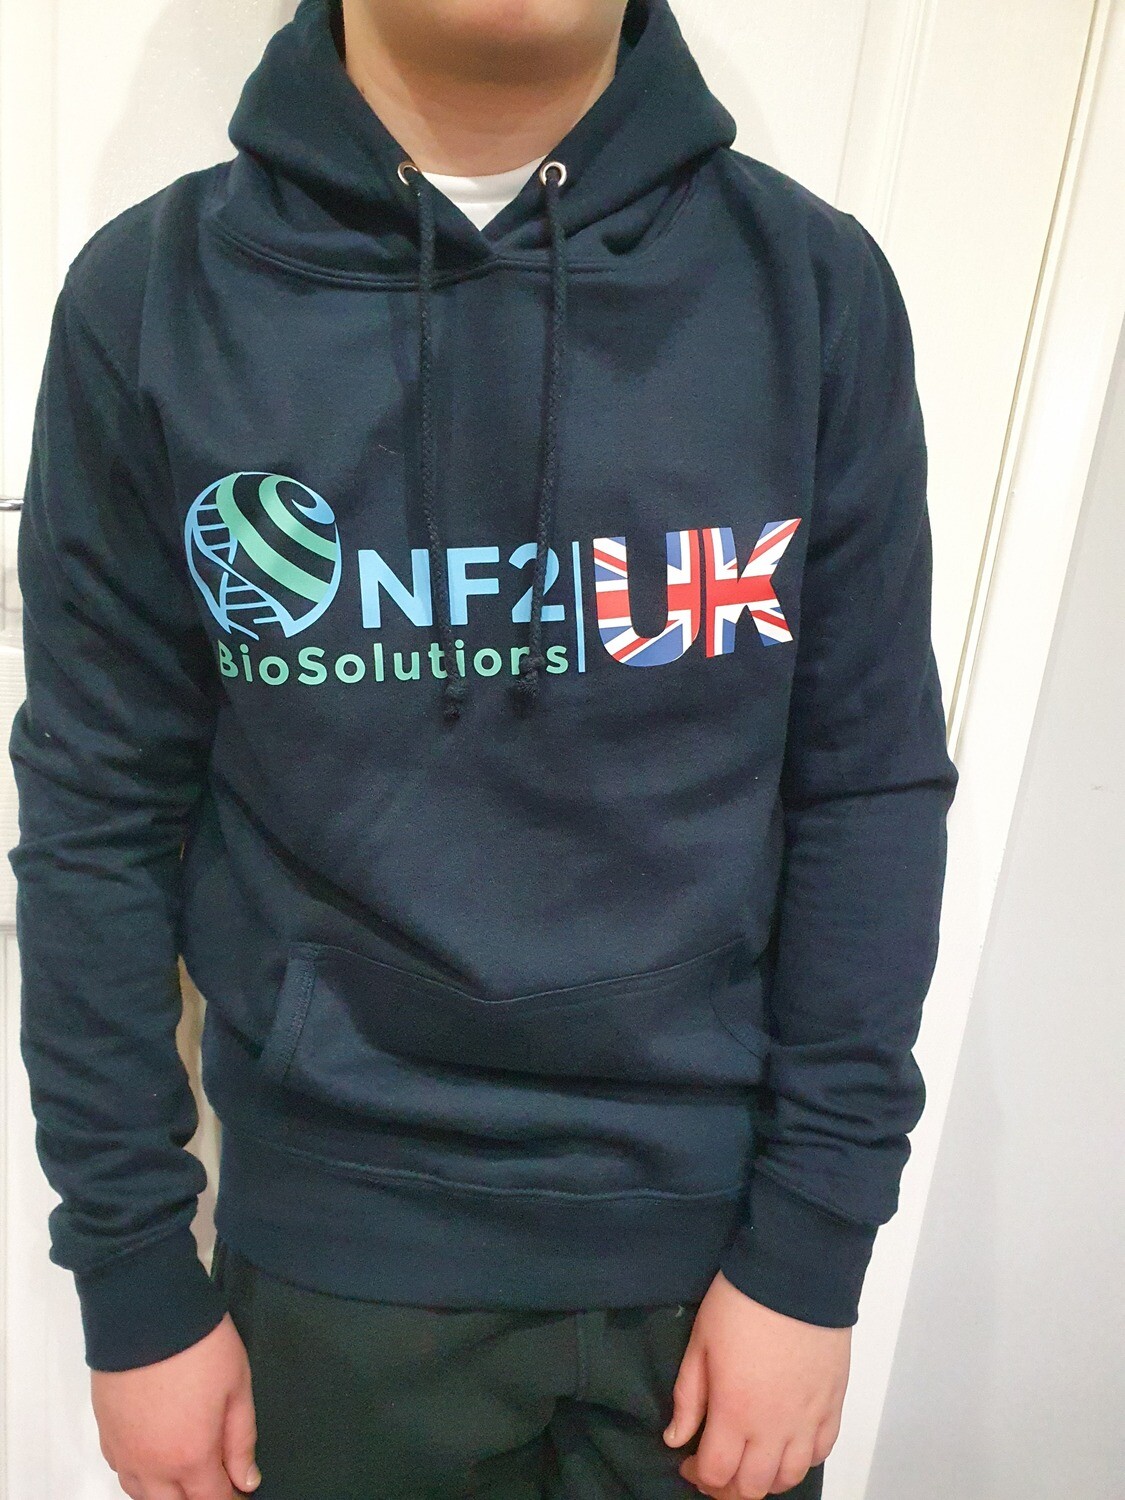 NF2 BioSolutions UK Hoodie Adult